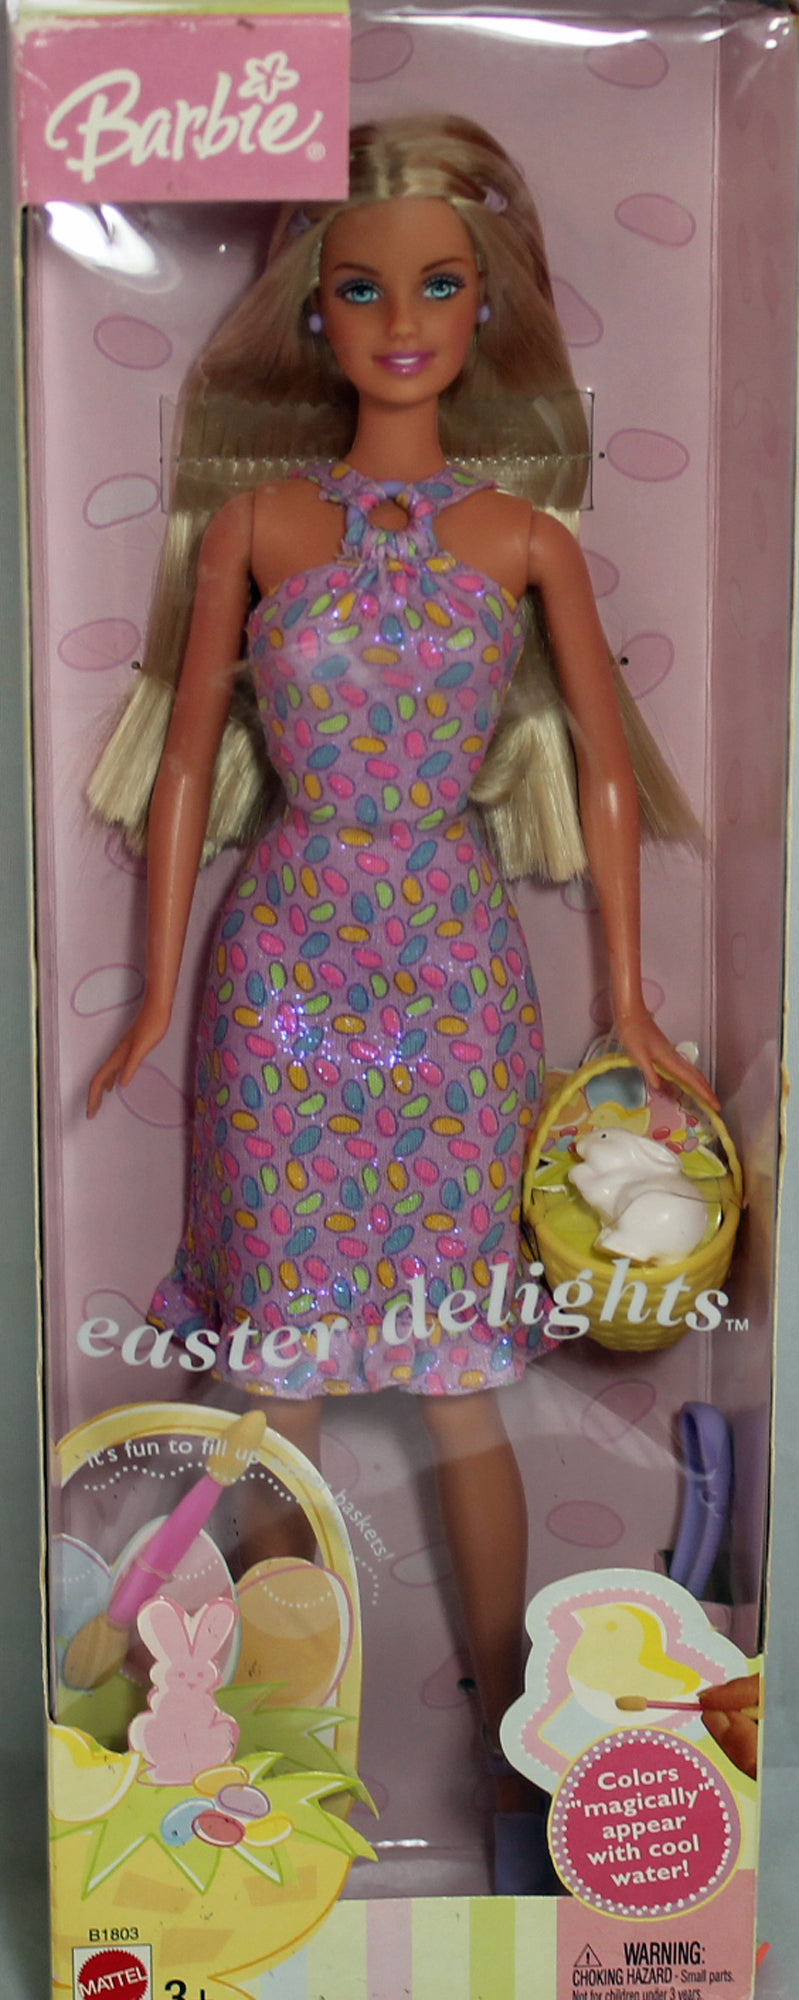 2003 Easter Delights Barbie (B1803)